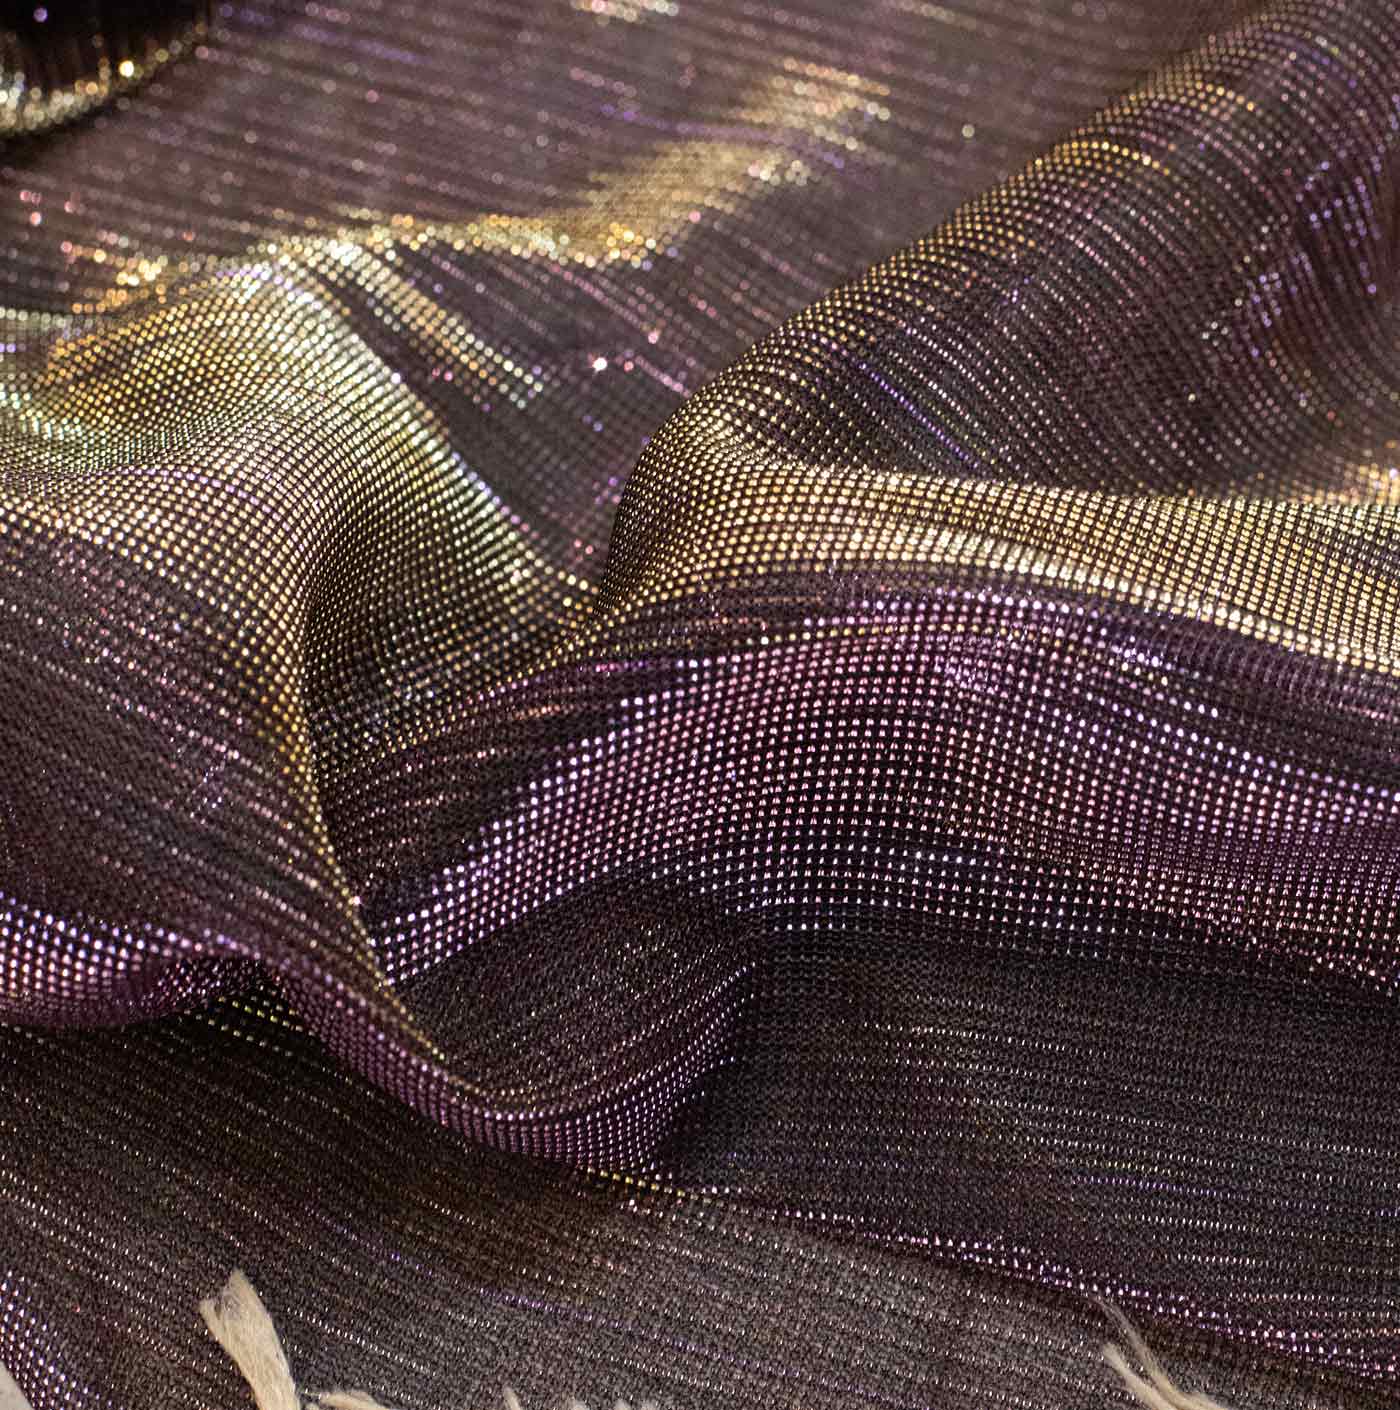 Iridescent Mesh Fabric